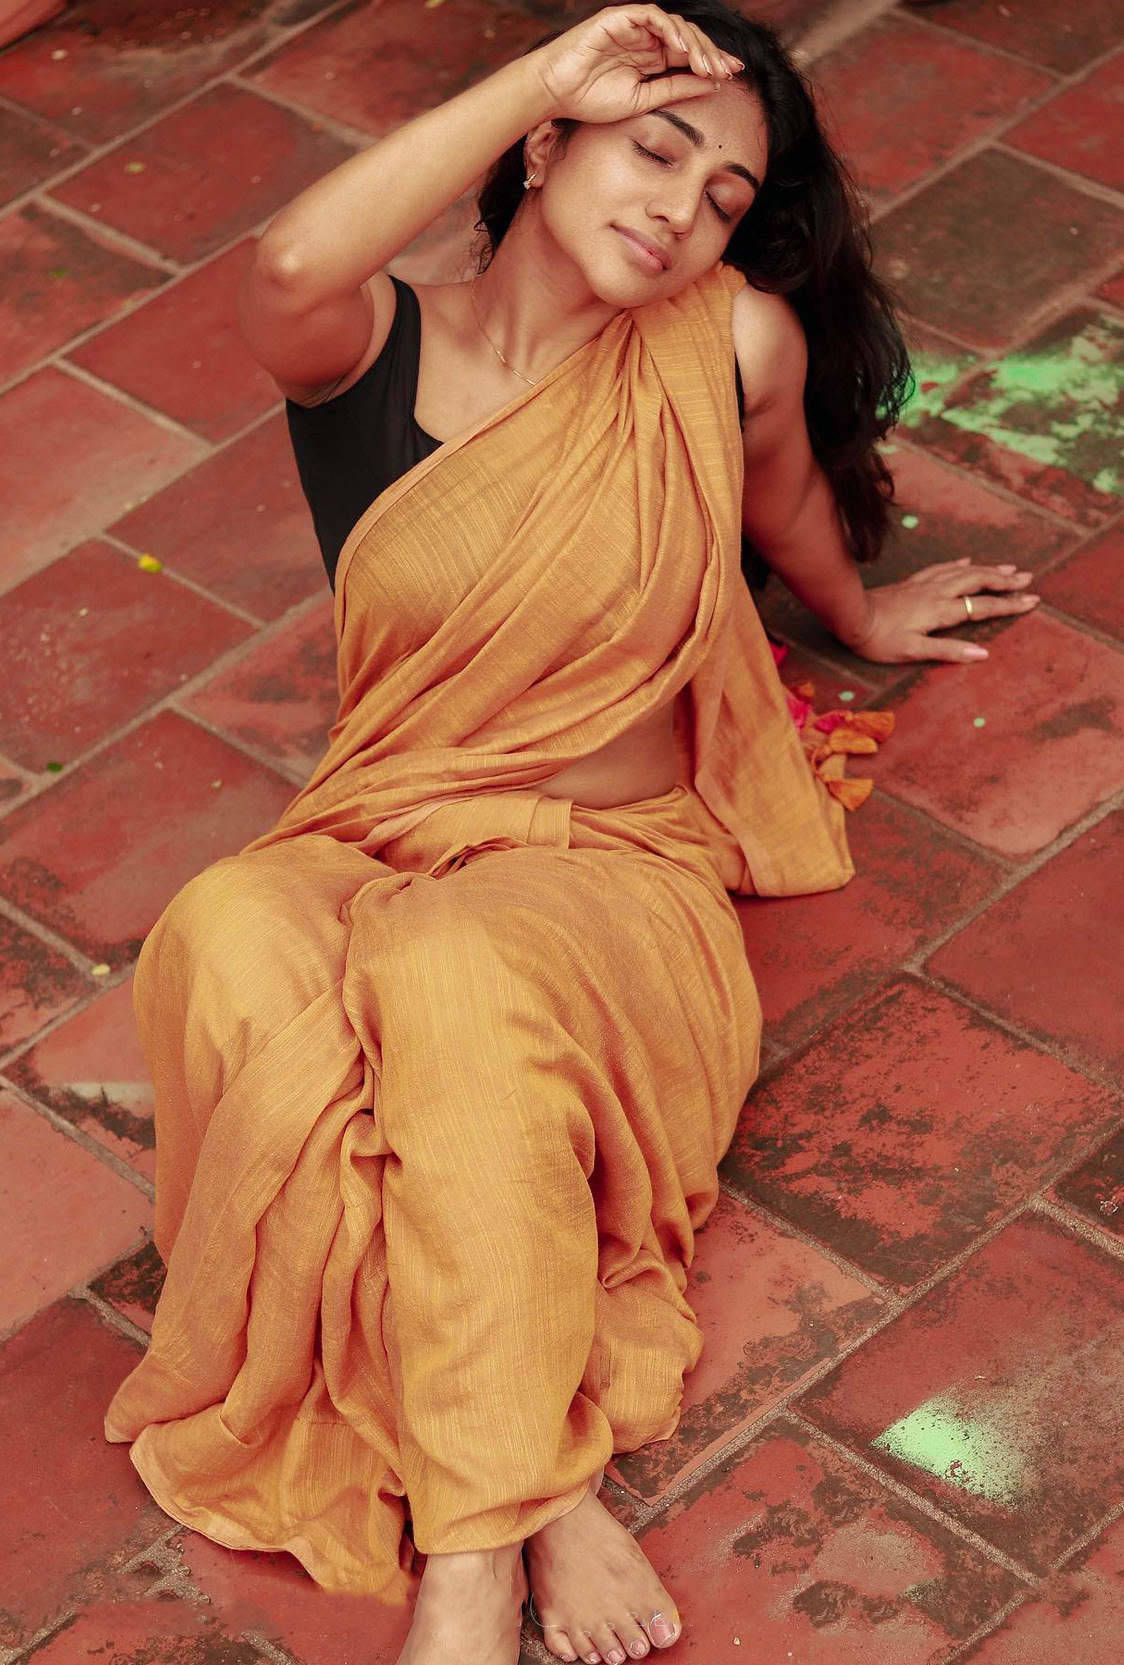 Bommu Lakshmi In Saree Hot Photos Bommu-Lakshmi-in-saree-photos-17